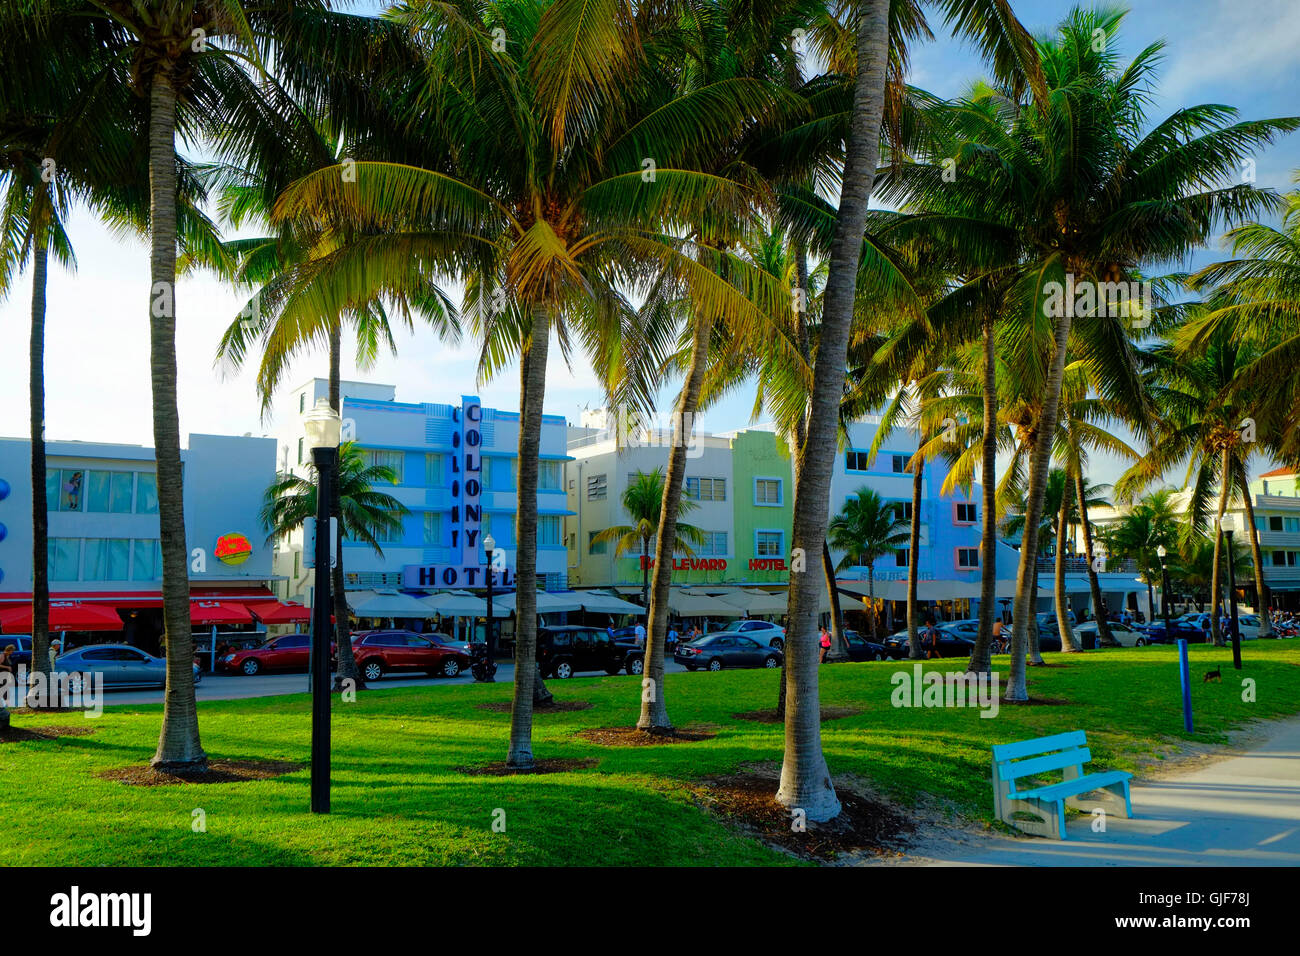 Hoteles Art Deco de Ocean Drive, Miami, Florida Foto de stock